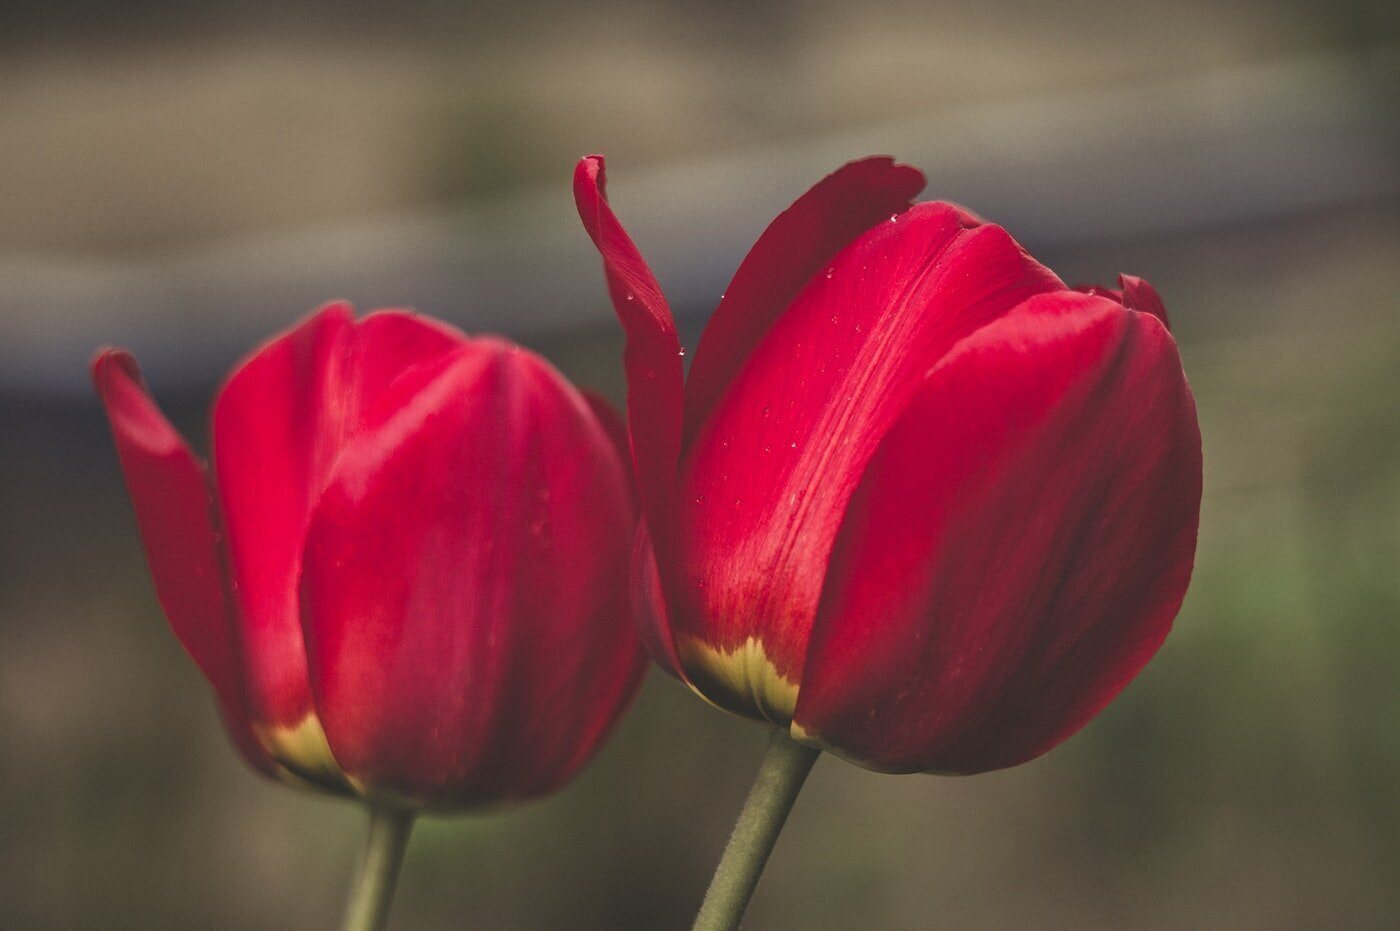 primo piano di due tulipani rossi - significato e simbolismo dei tulipani